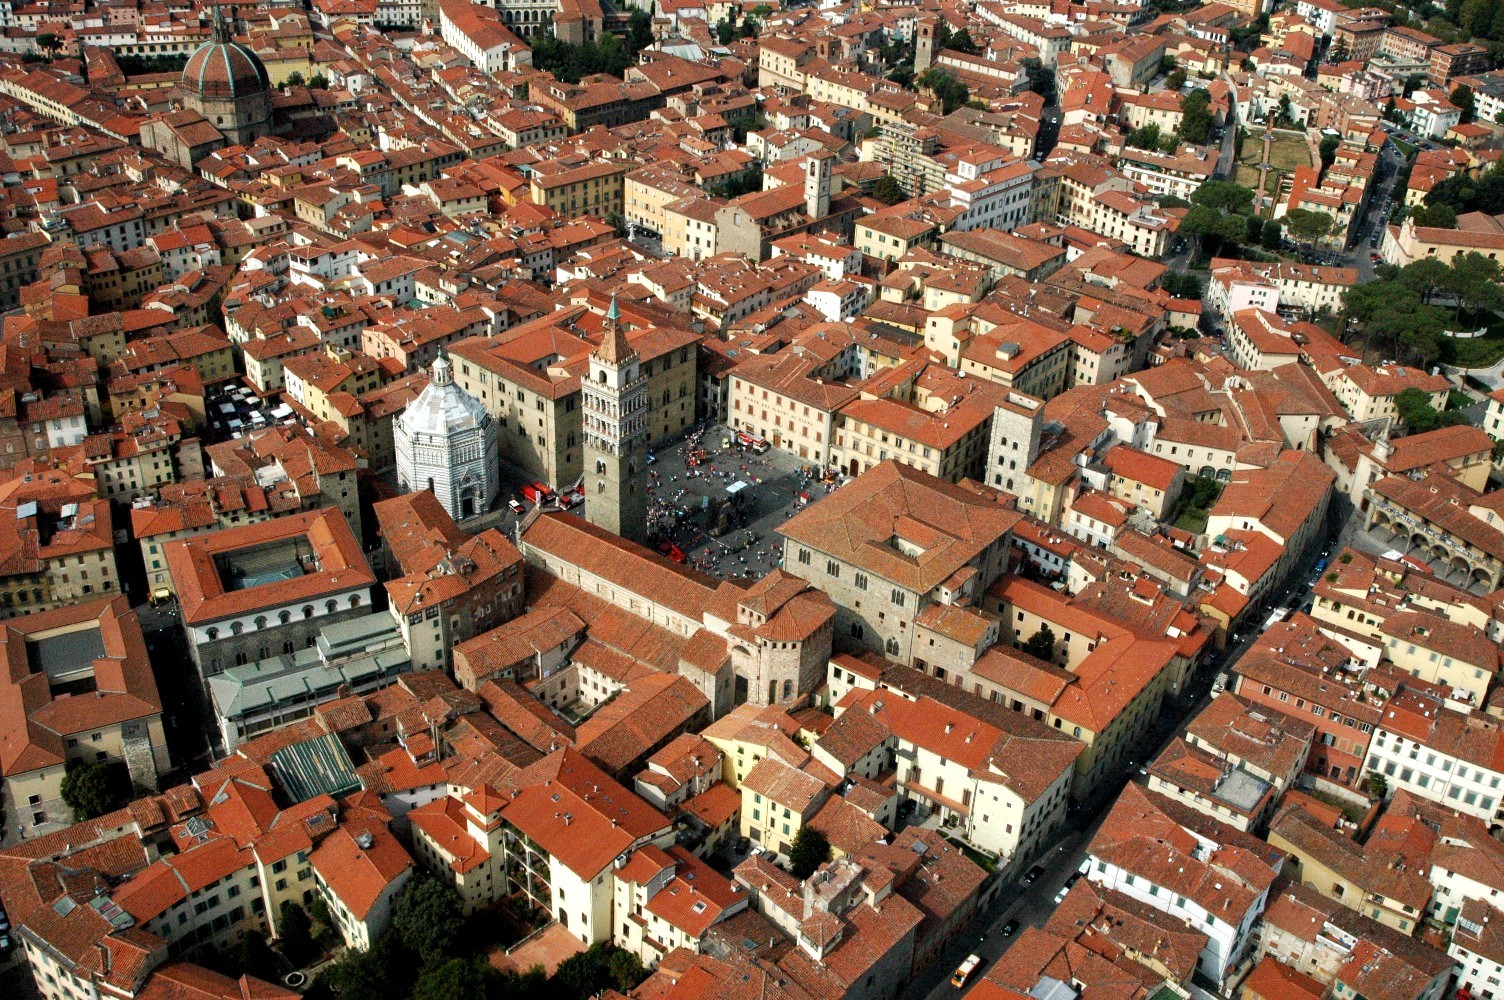 Centro storico Pistoia dall'alto (foto da comuncato)